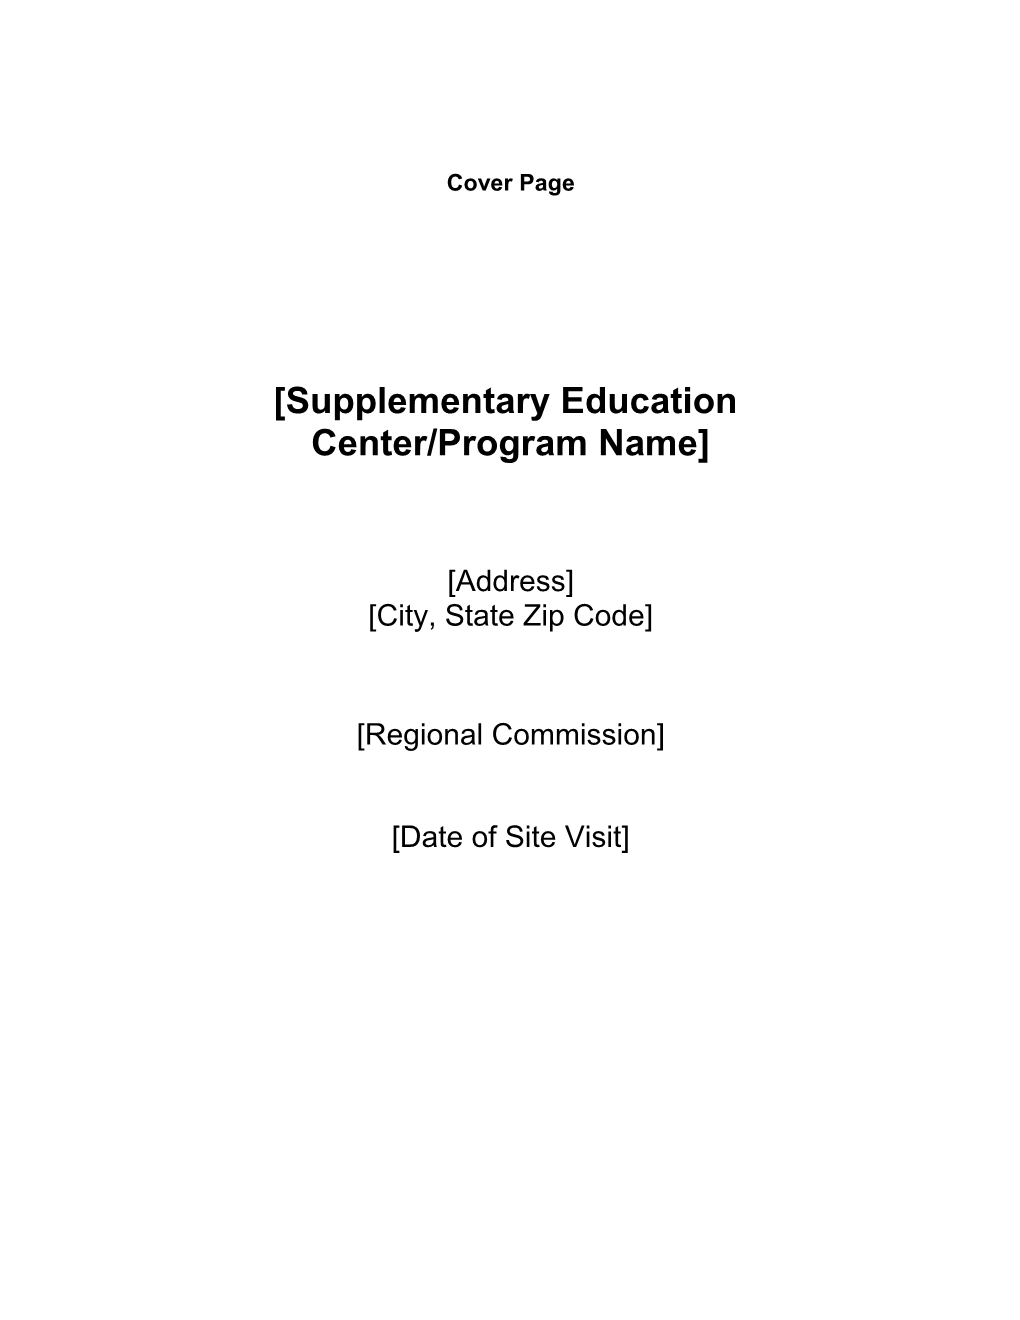 Supplementary Education Center/Program Name